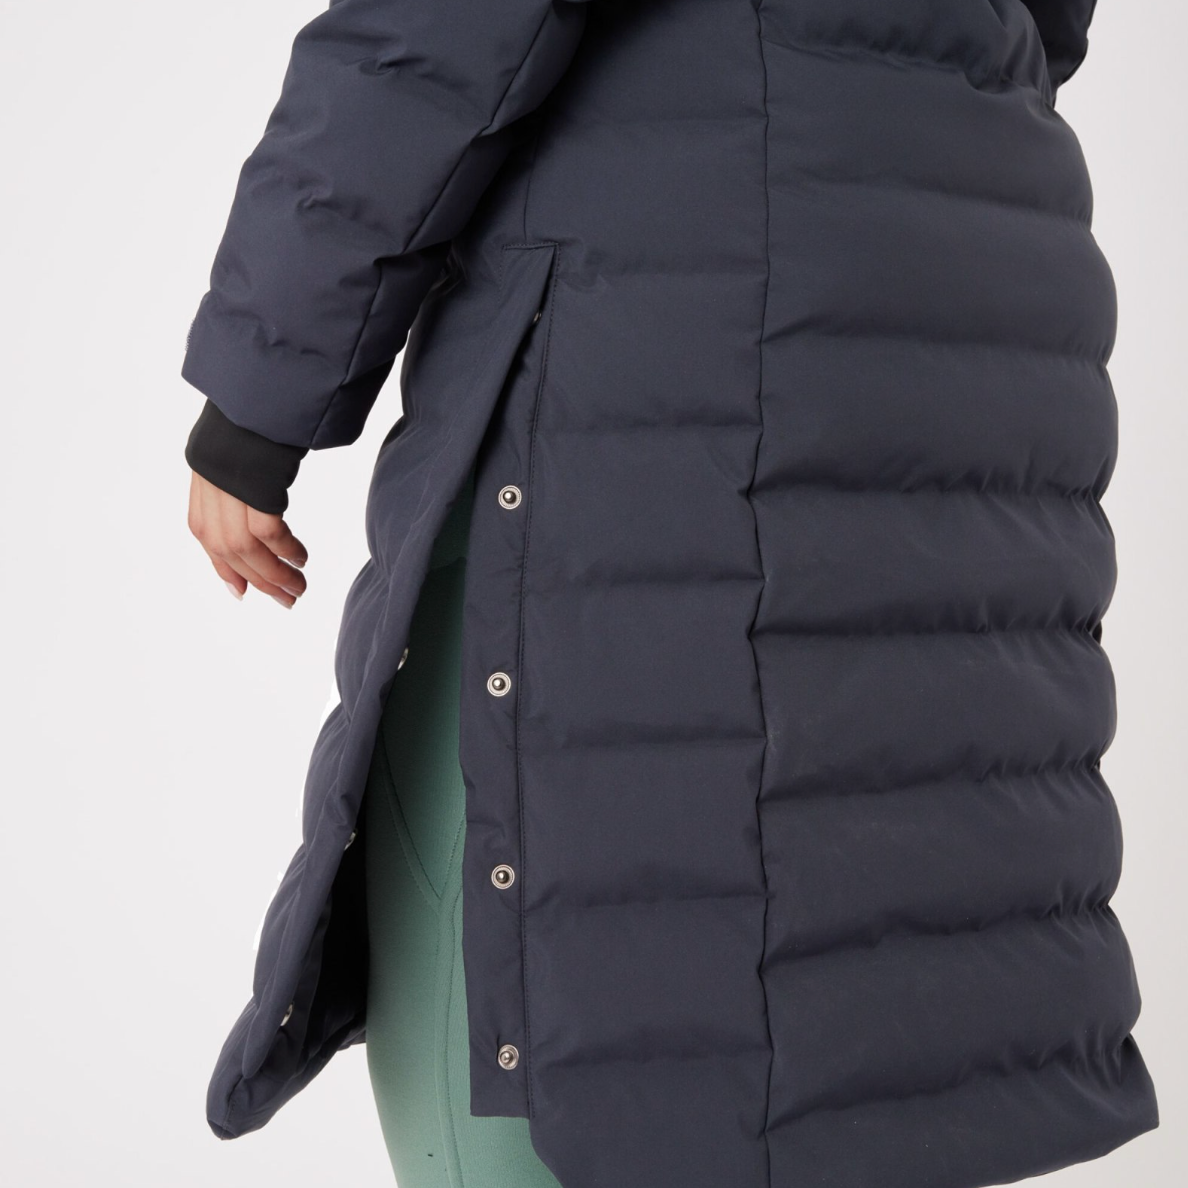 B Vertigo Celeste Waterproof Parka Coats & Jackets B Vertigo - Equestrian Fashion Outfitters